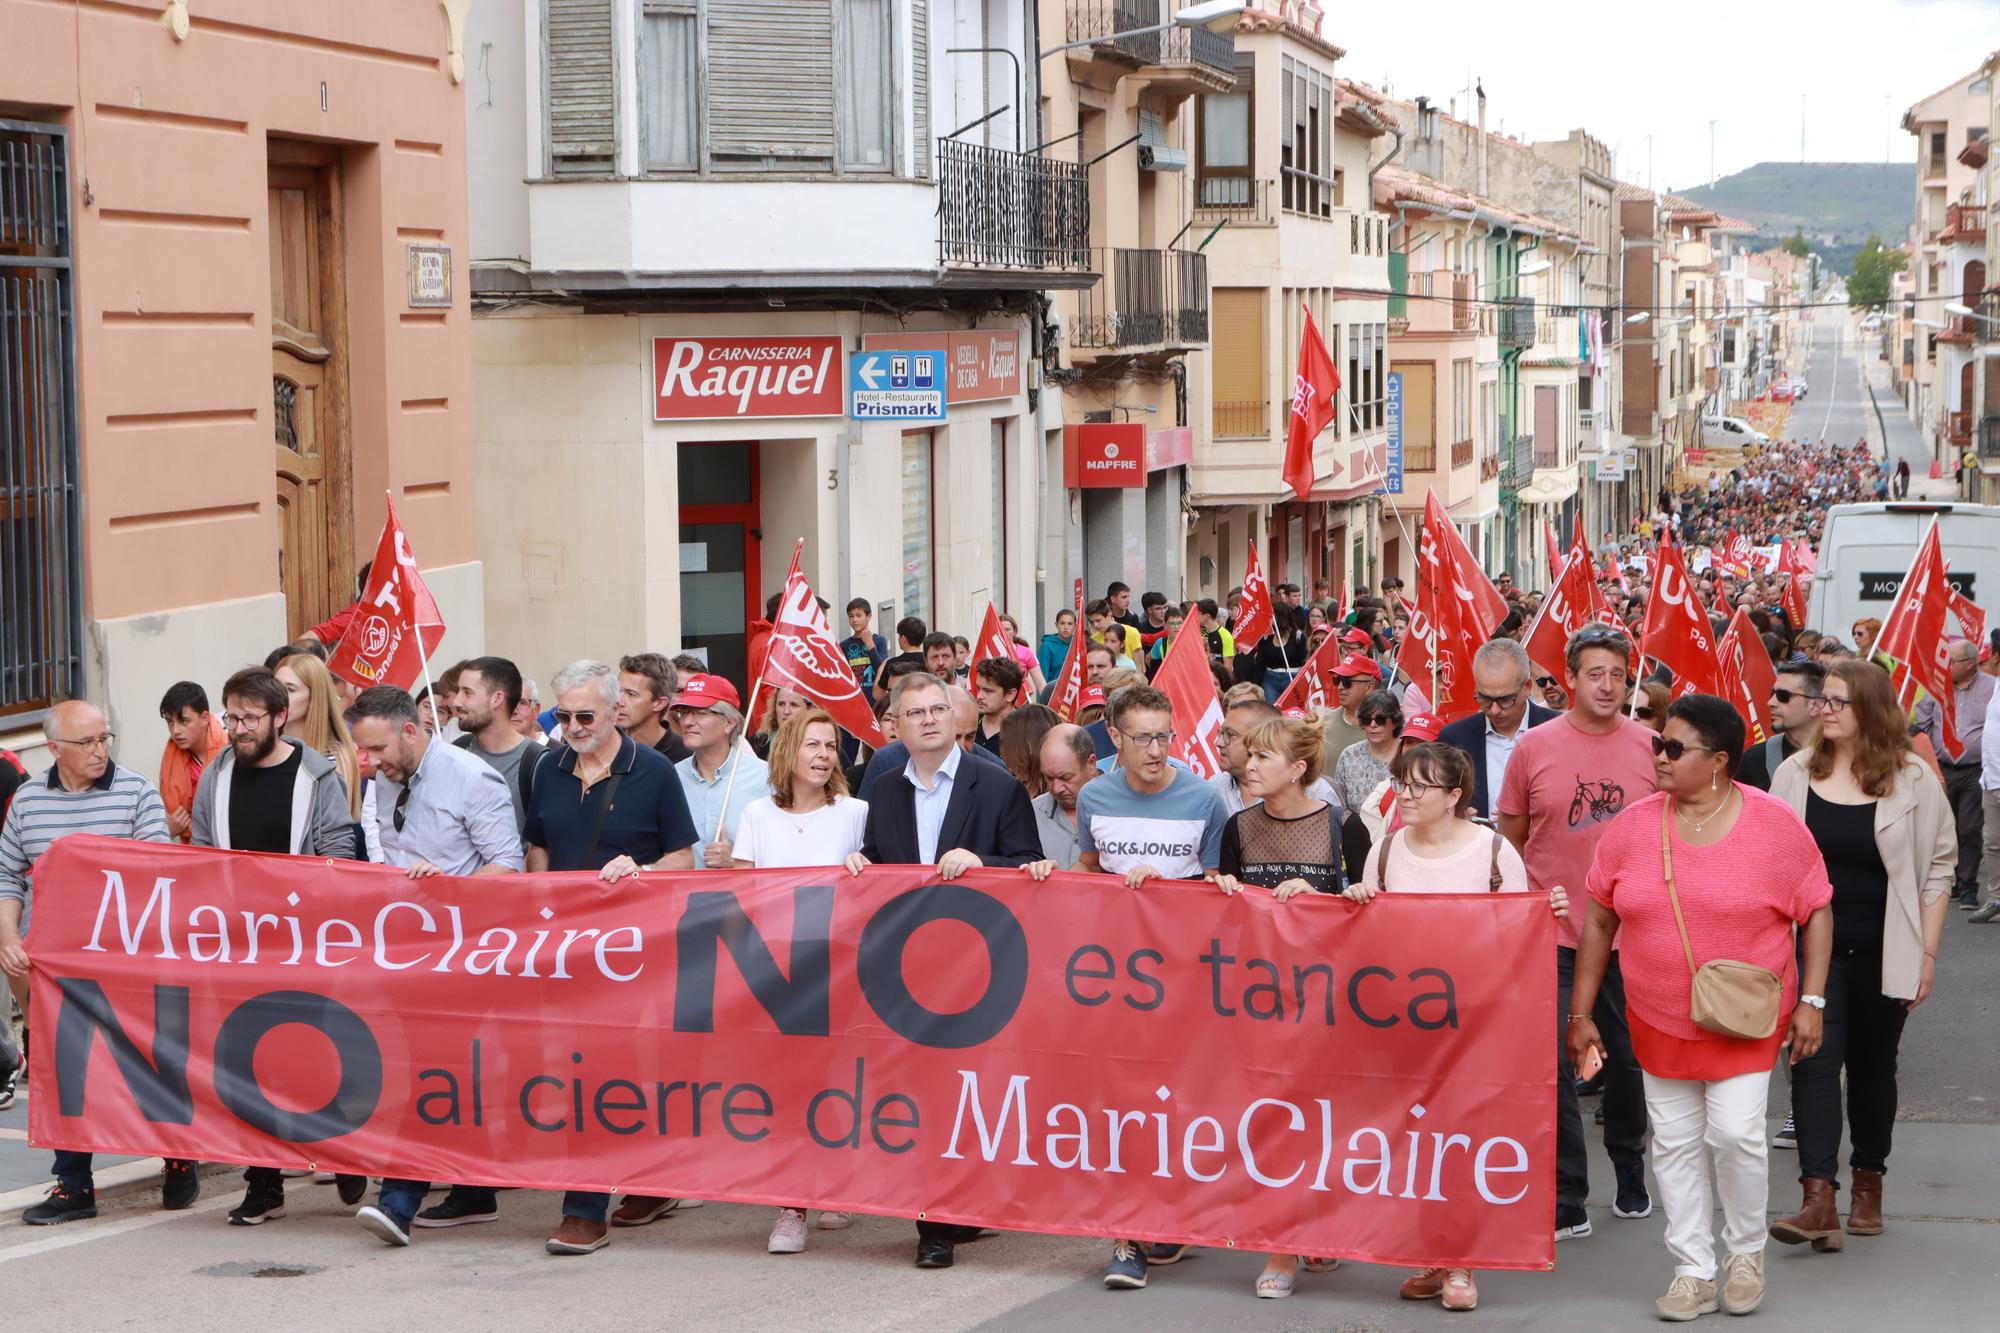 Galería de fotos: 2.000 personas claman por una solución ante el inminente cierre de Marie Claire